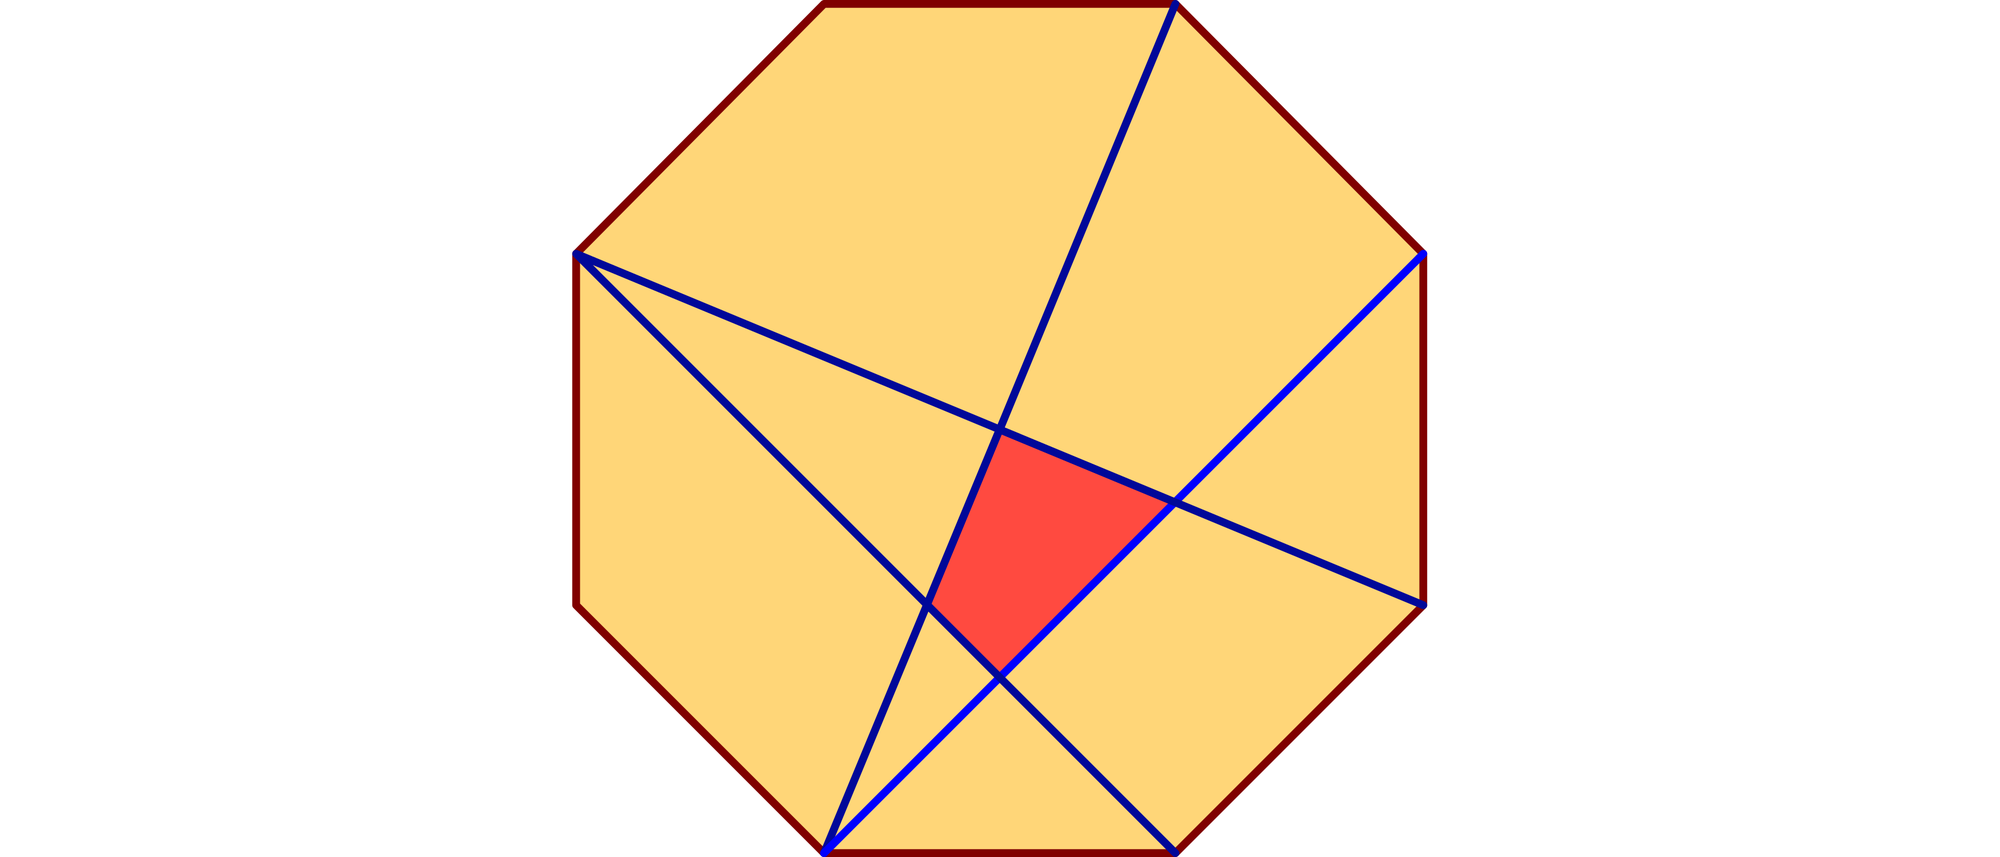 In einem regelmäßigen Achteck der Seitenlänge 1 begrenzen vier Diagonalen ein Viereck. 